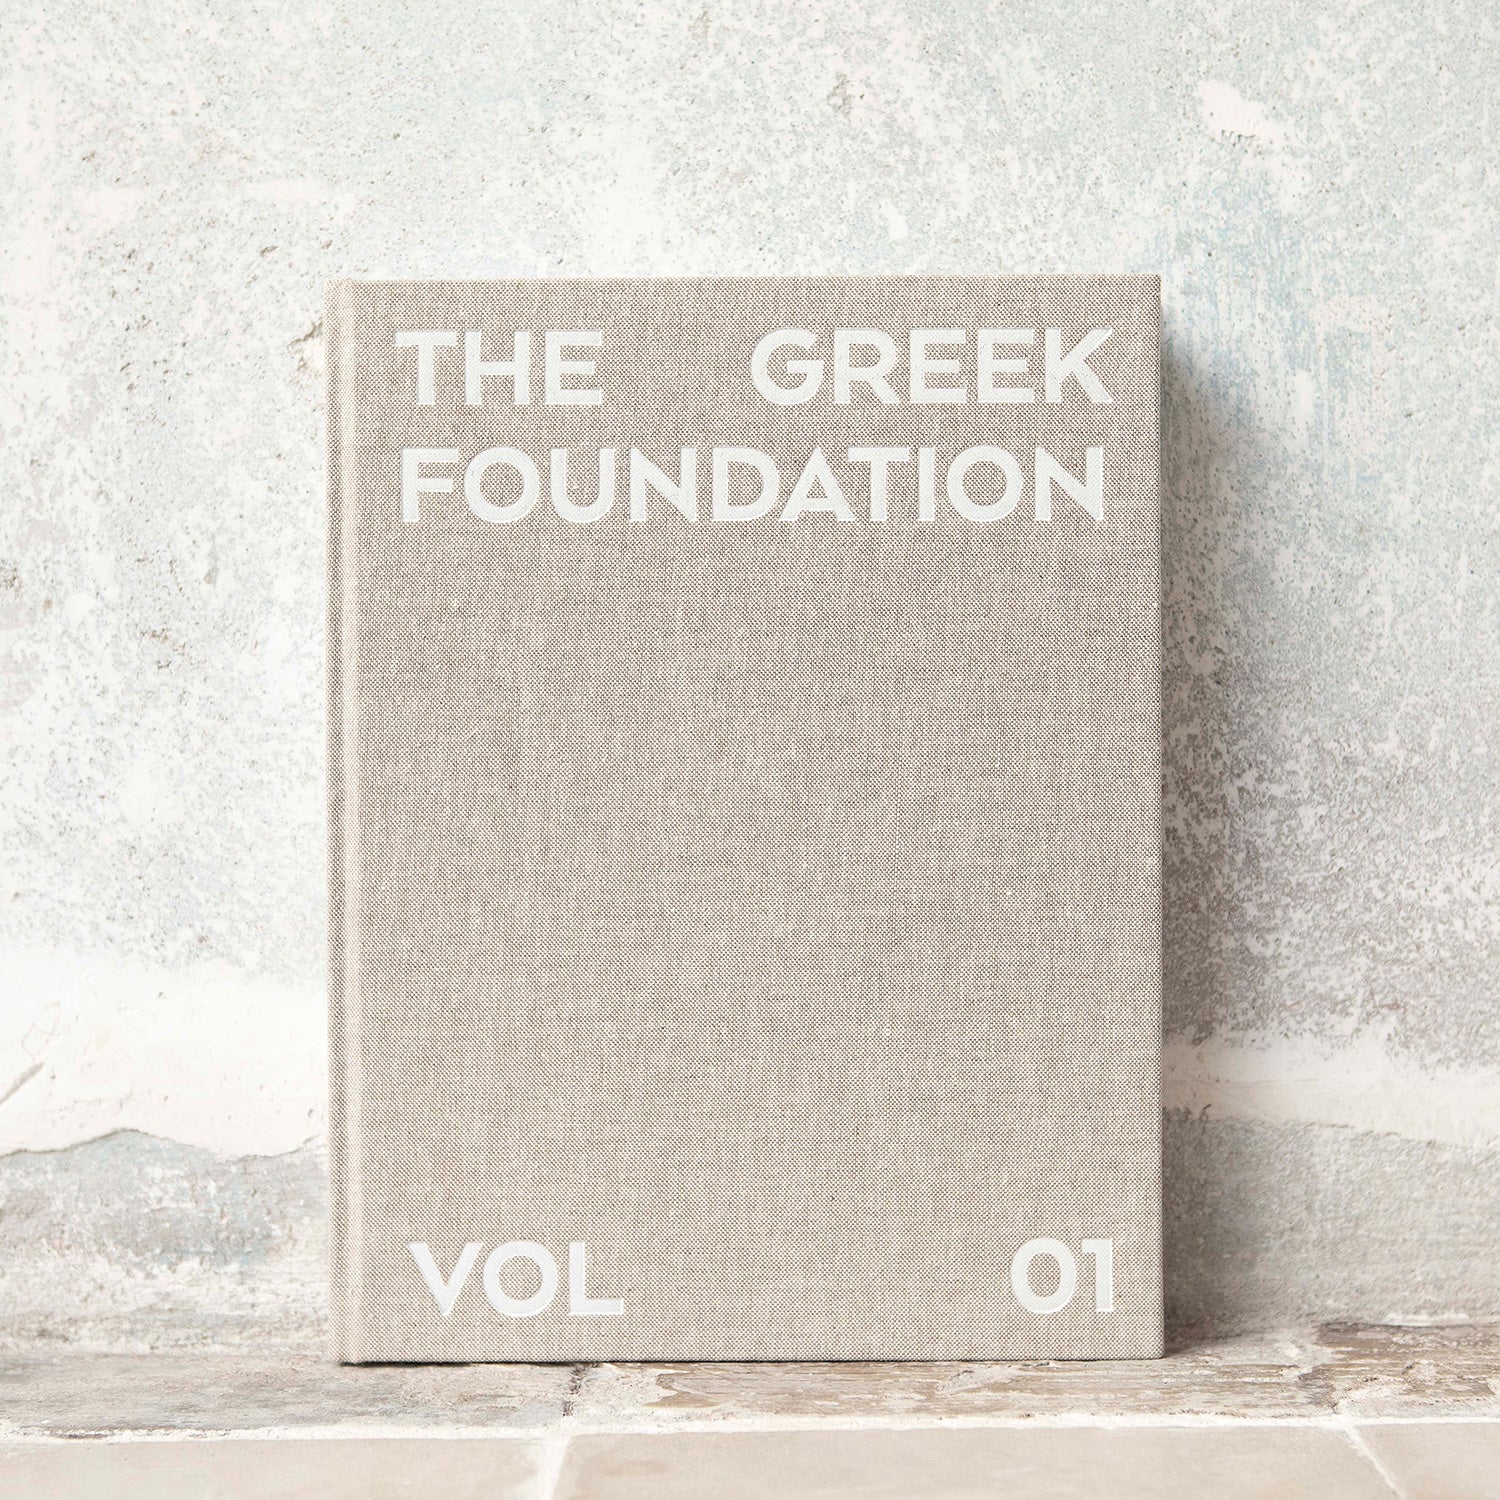 THE GREEK FOUNDATION VOL 01